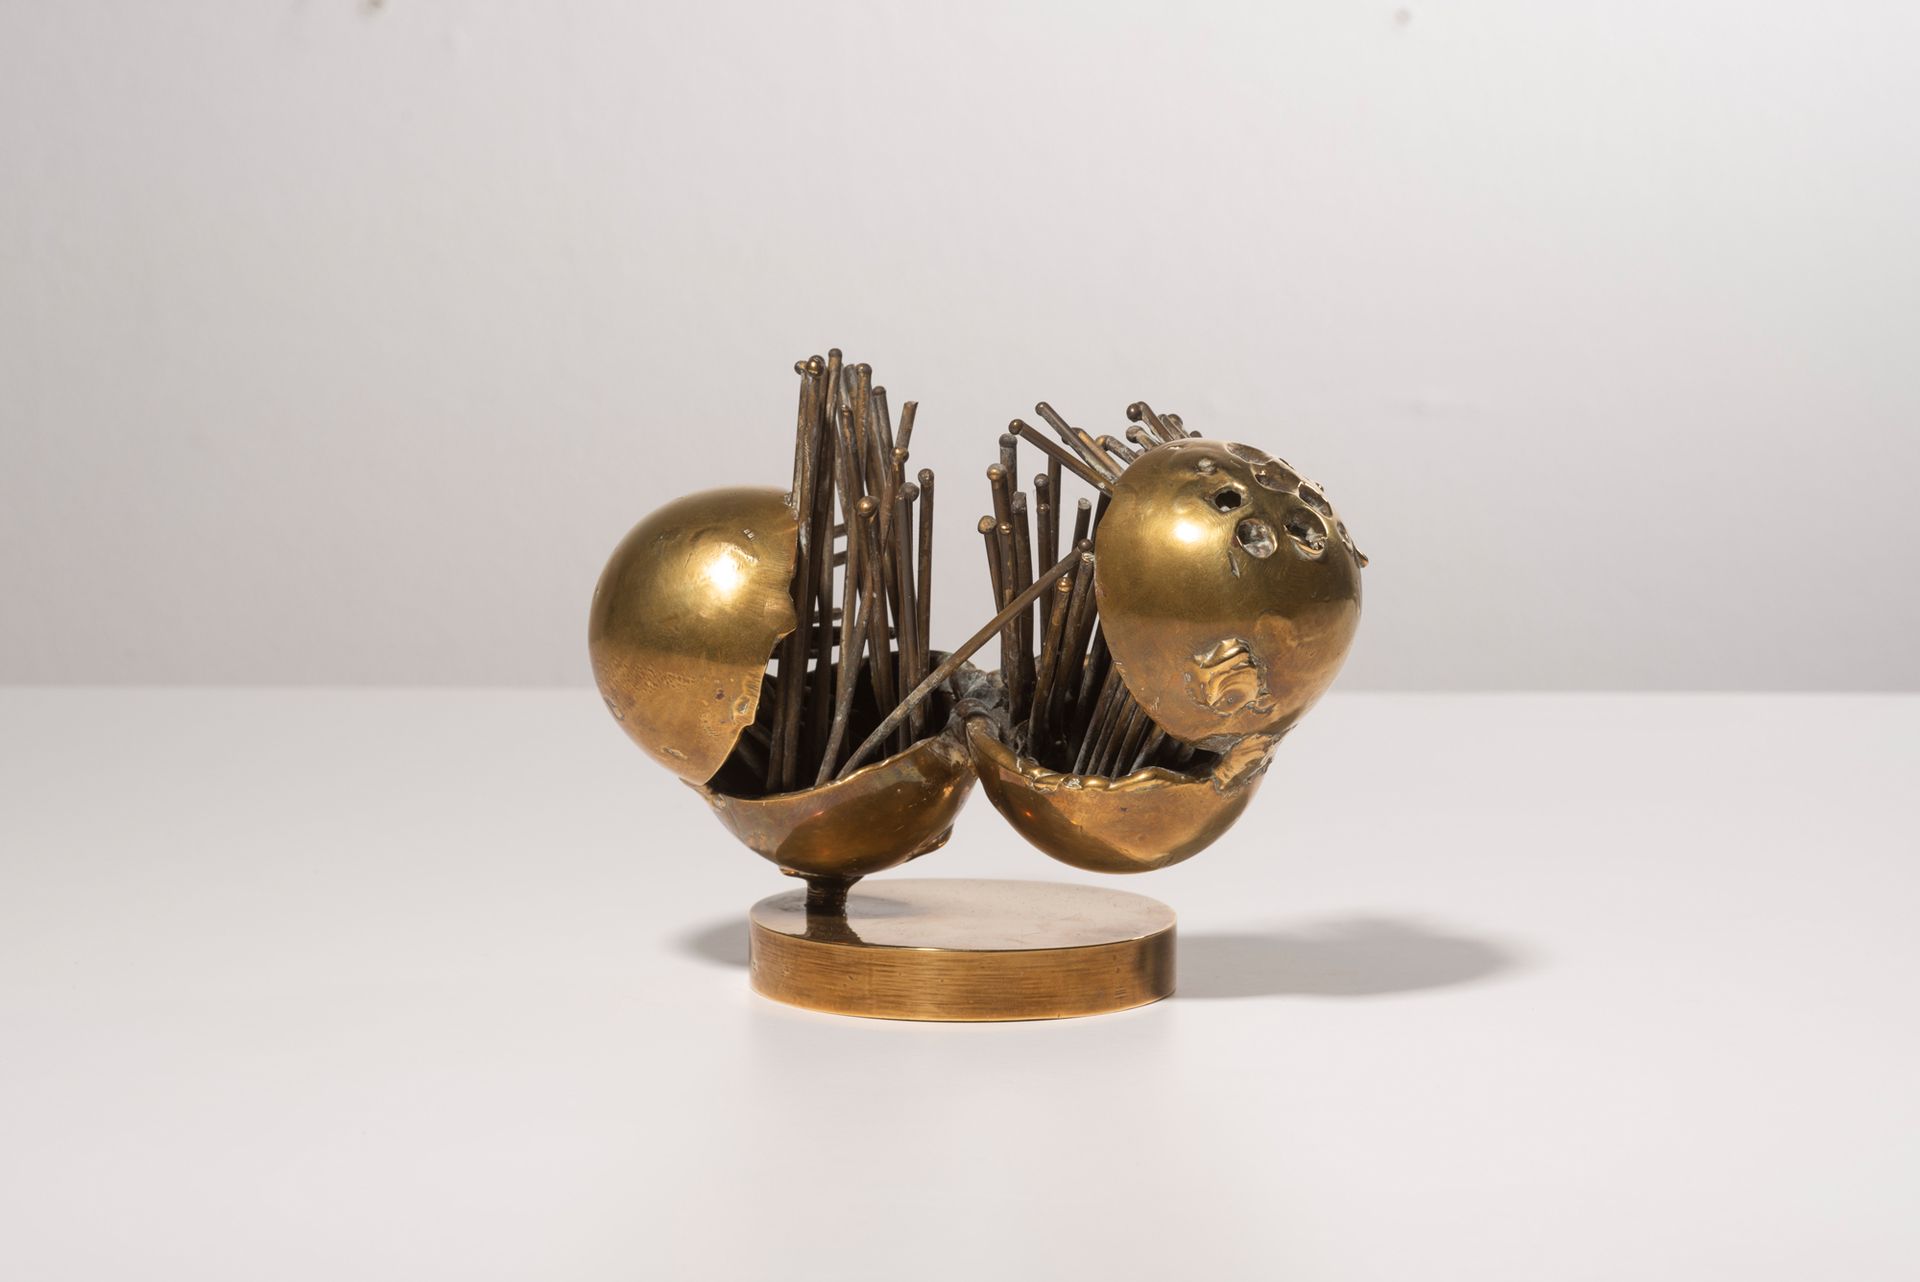 Alberto GUZMAN (1927-2017) Partition, 1967
Geschweißte Bronze mit goldener Patin&hellip;